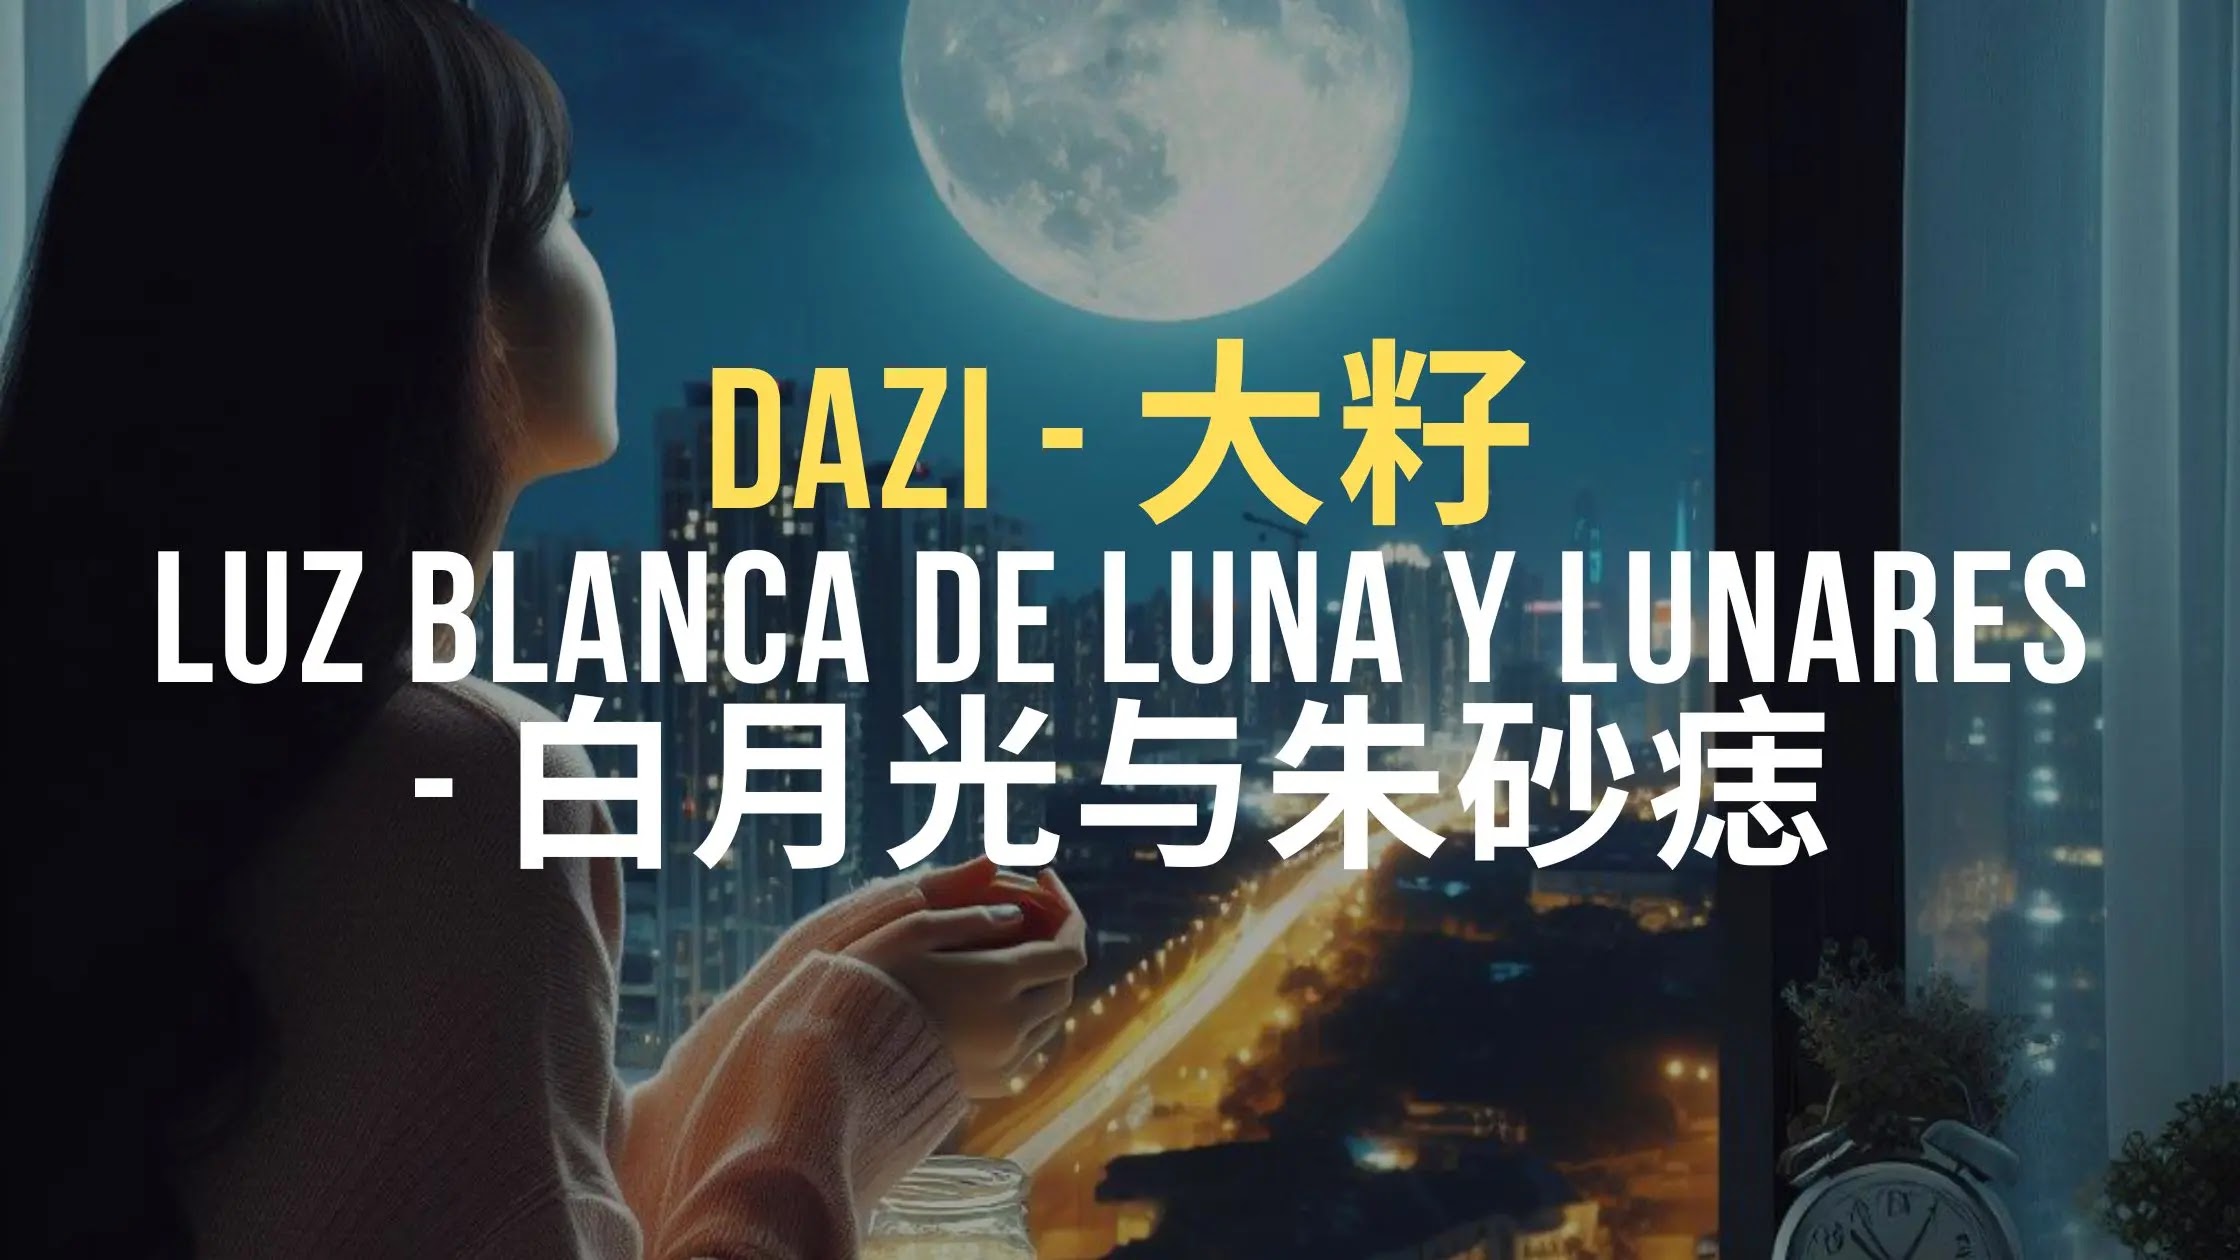 Dazi 大籽 - Luz de luna blanca y lunares 白月光与朱砂痣